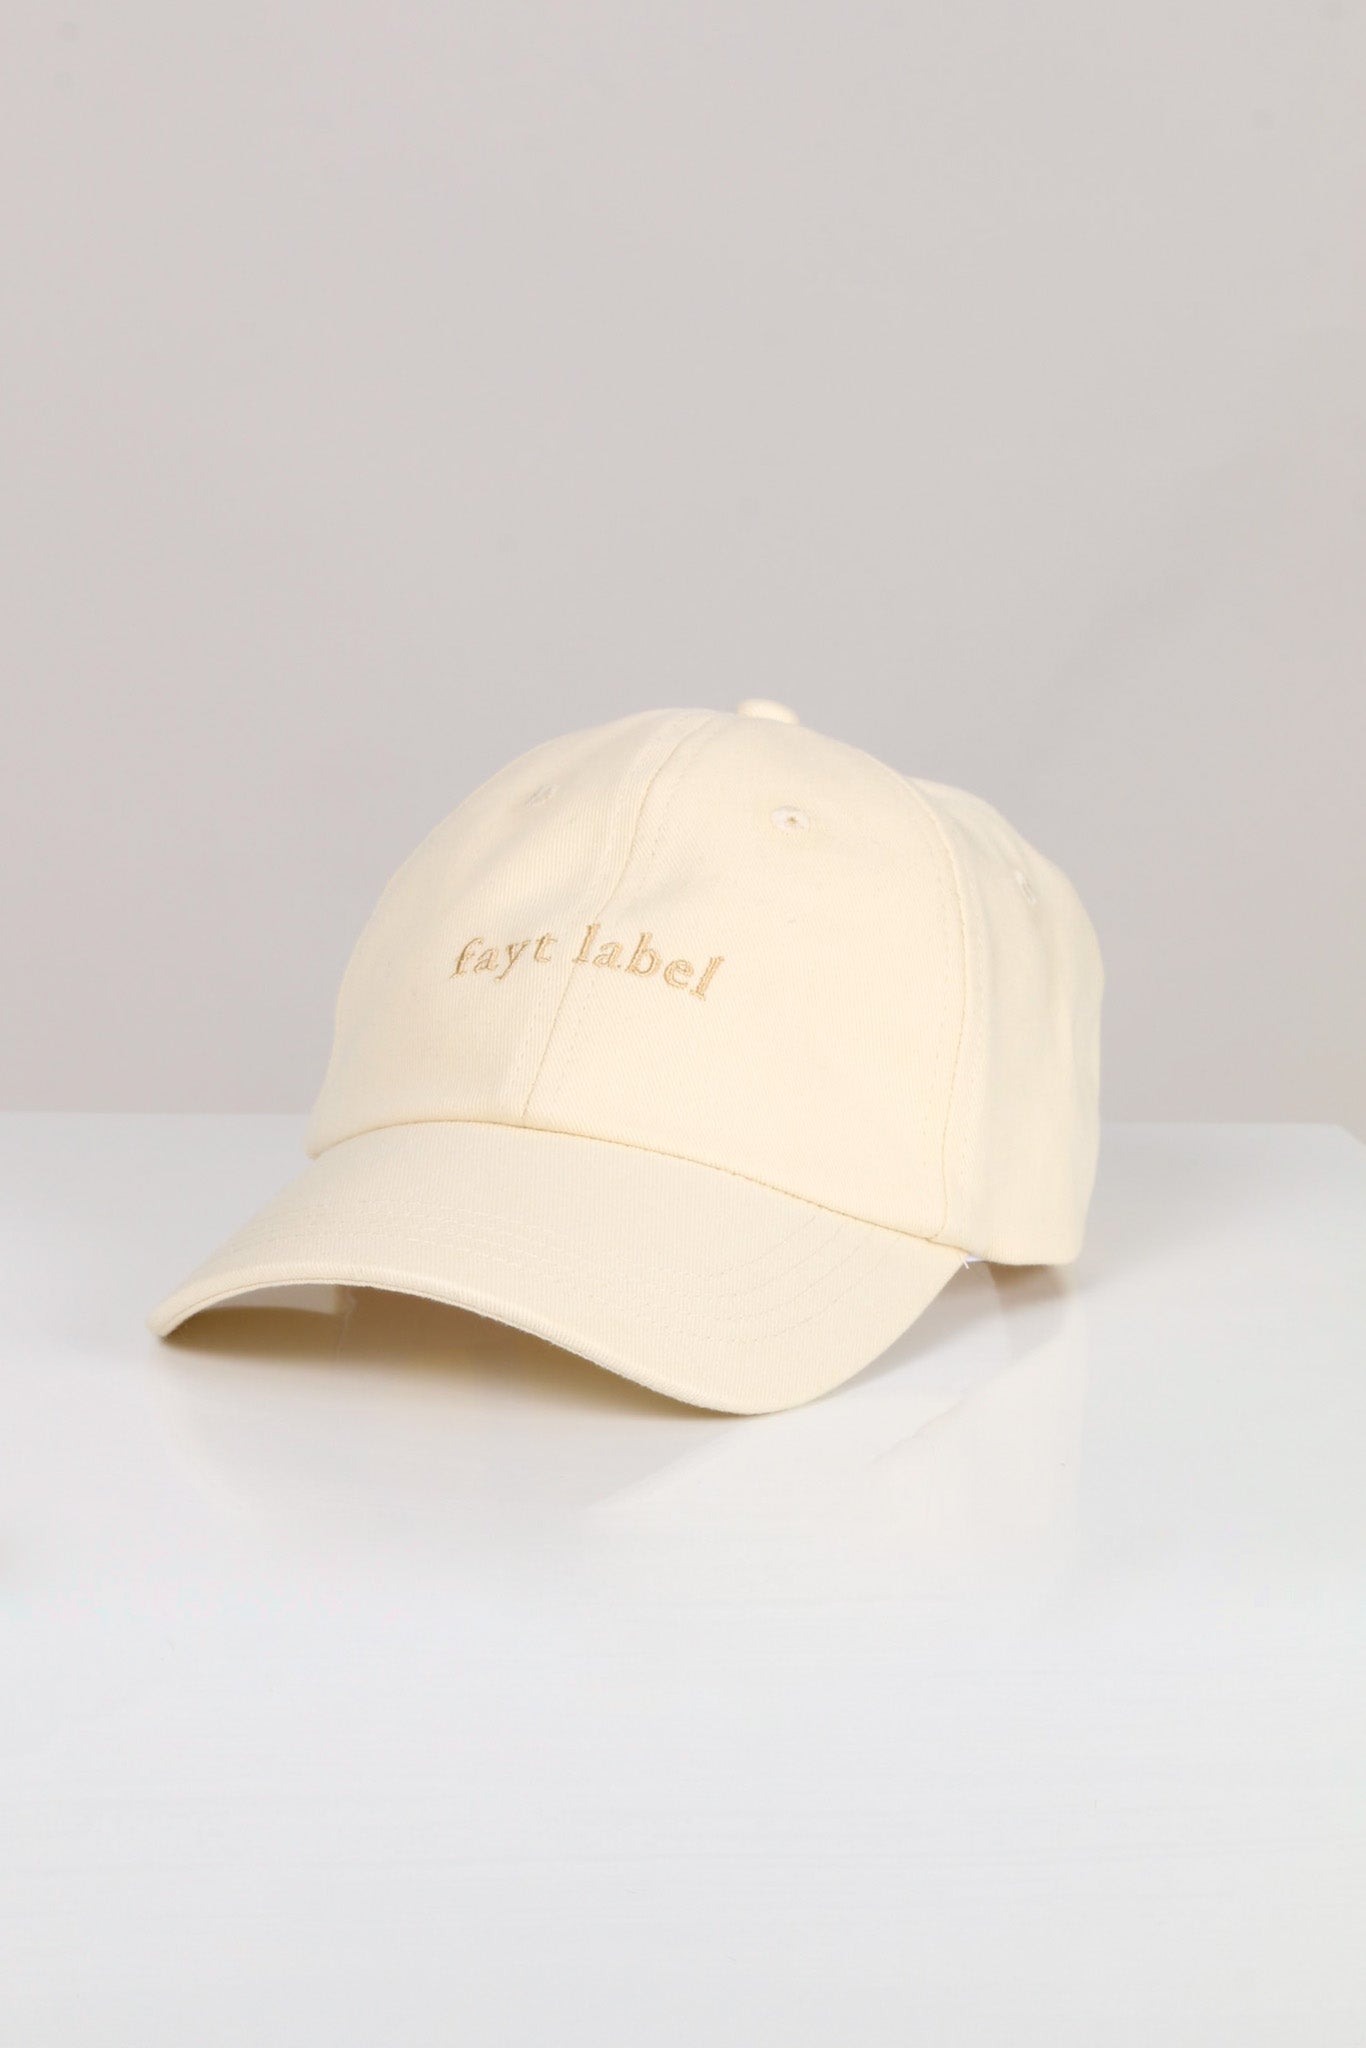 FAYT DAD CAP